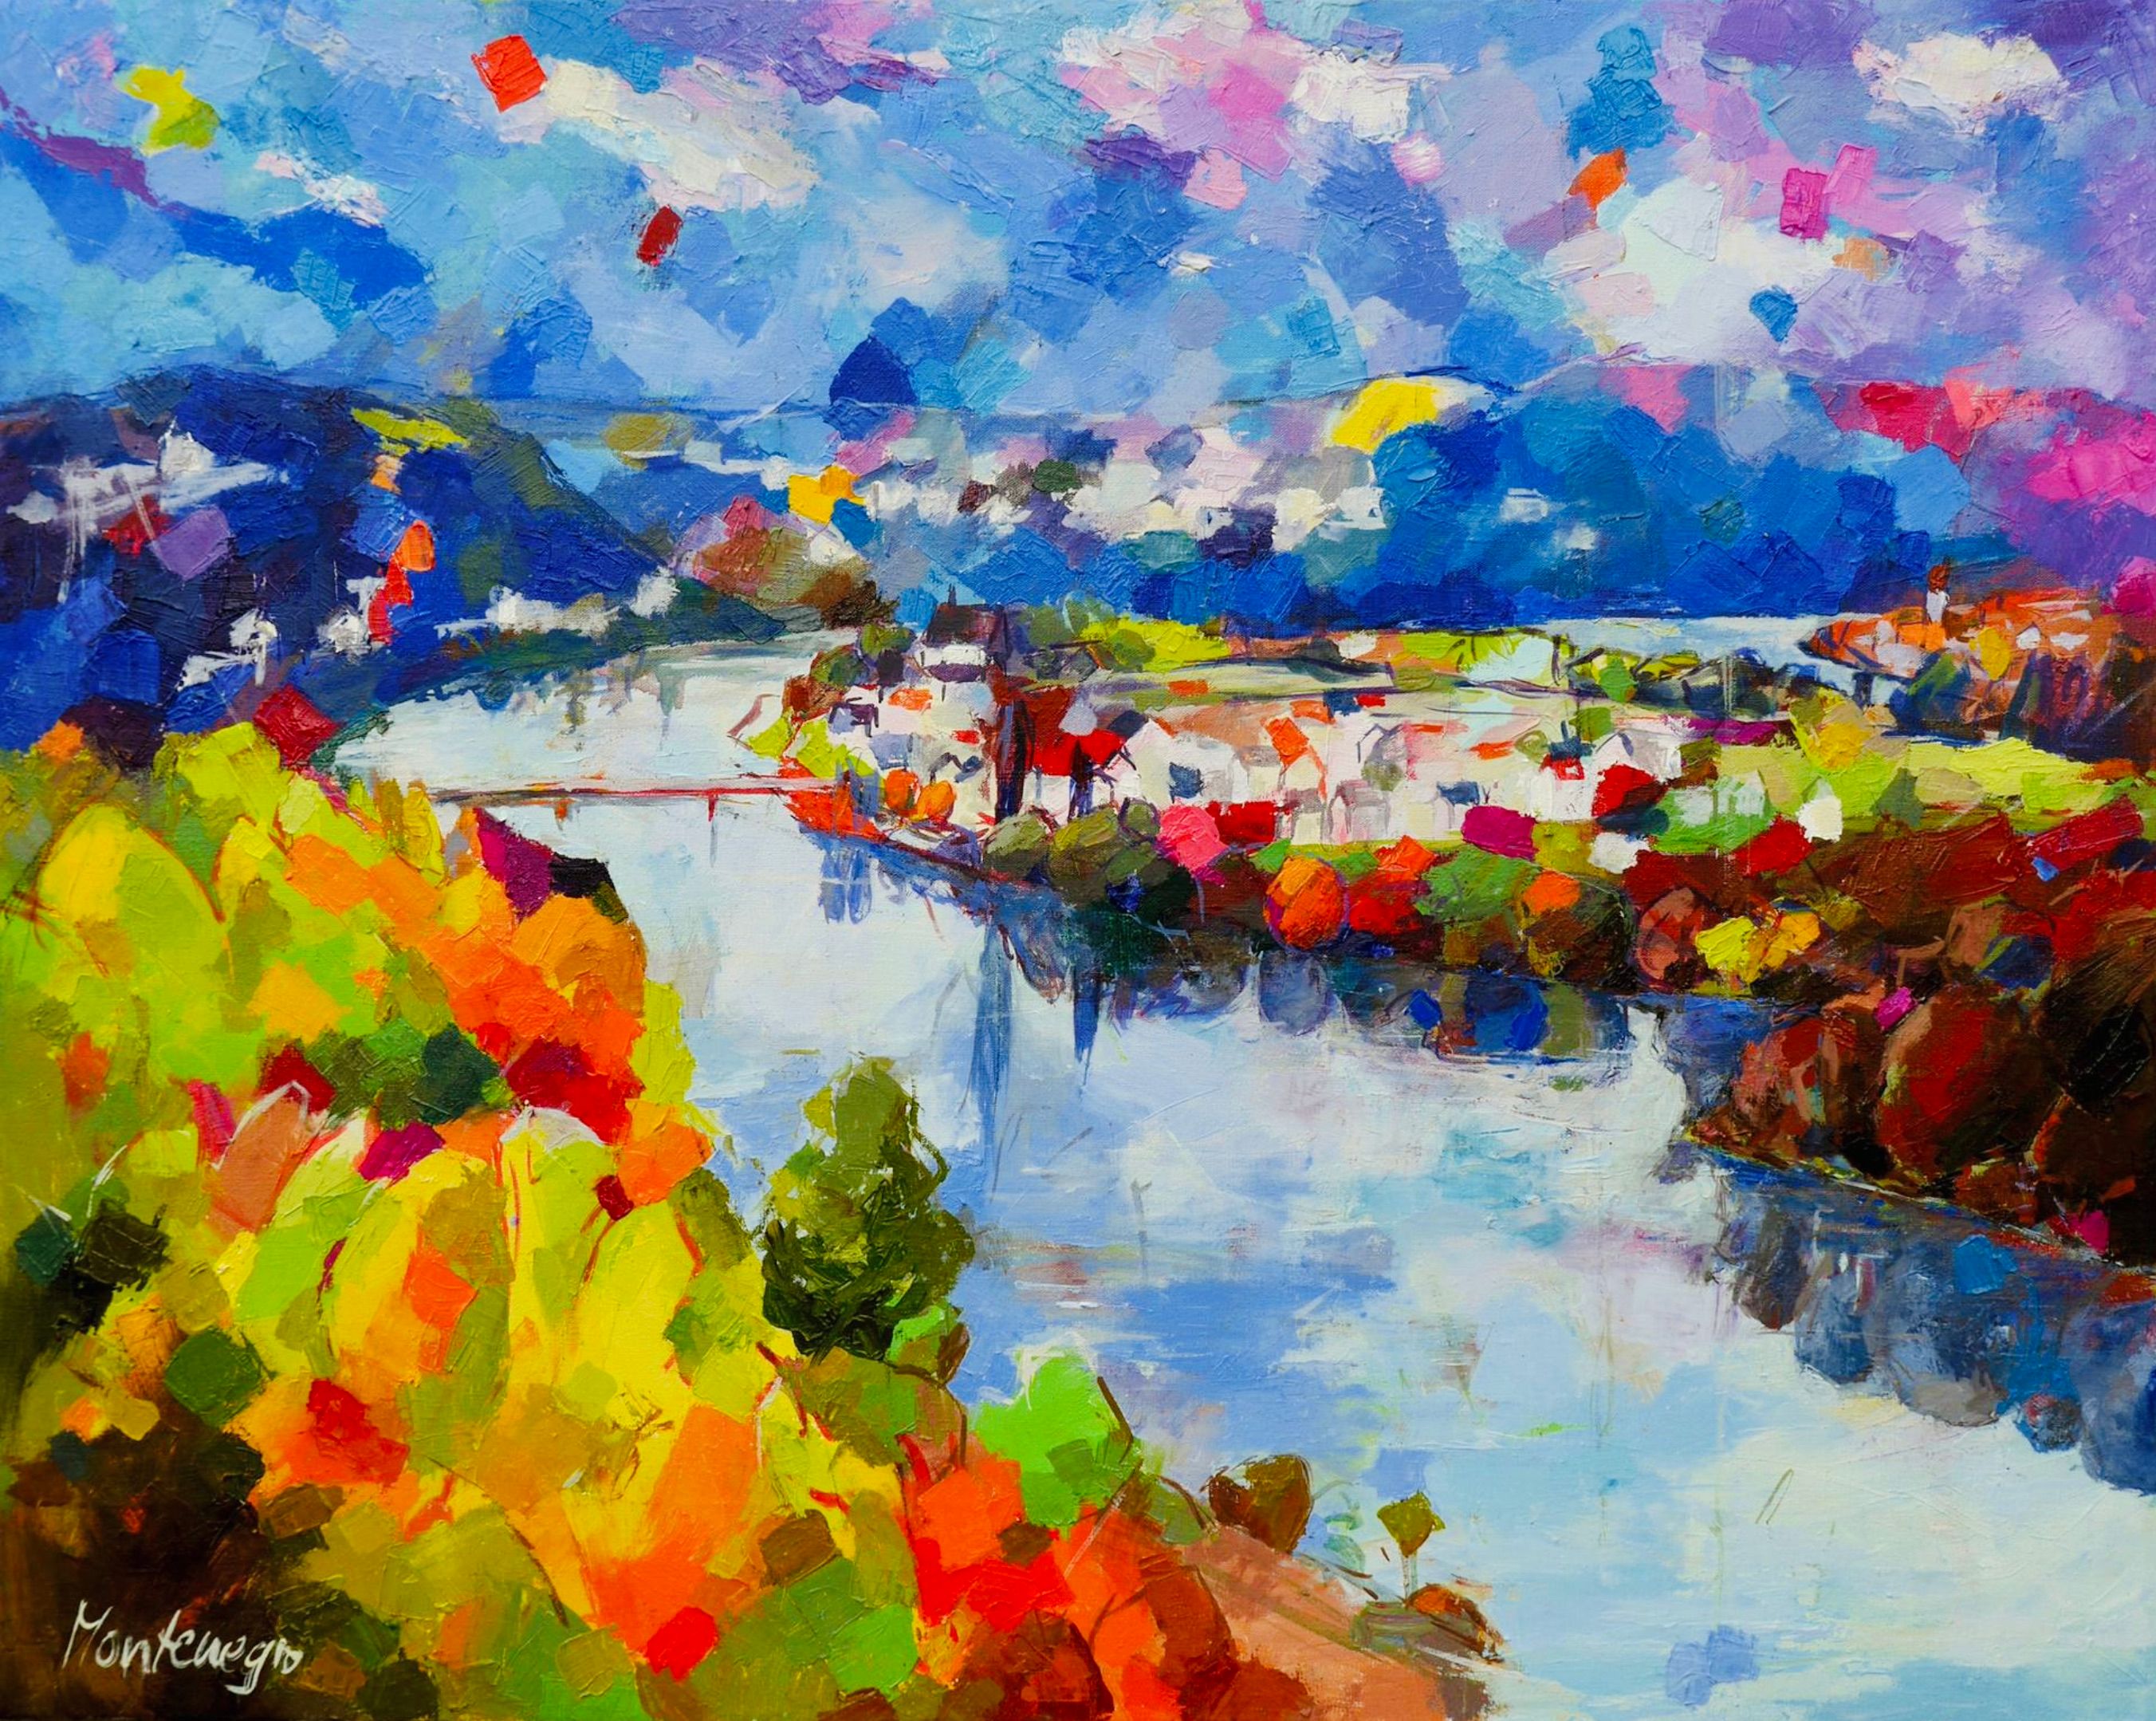 Miriam Montenegro pintura impresionista paisaje con río azul rodeado de árboles de hoja caduca